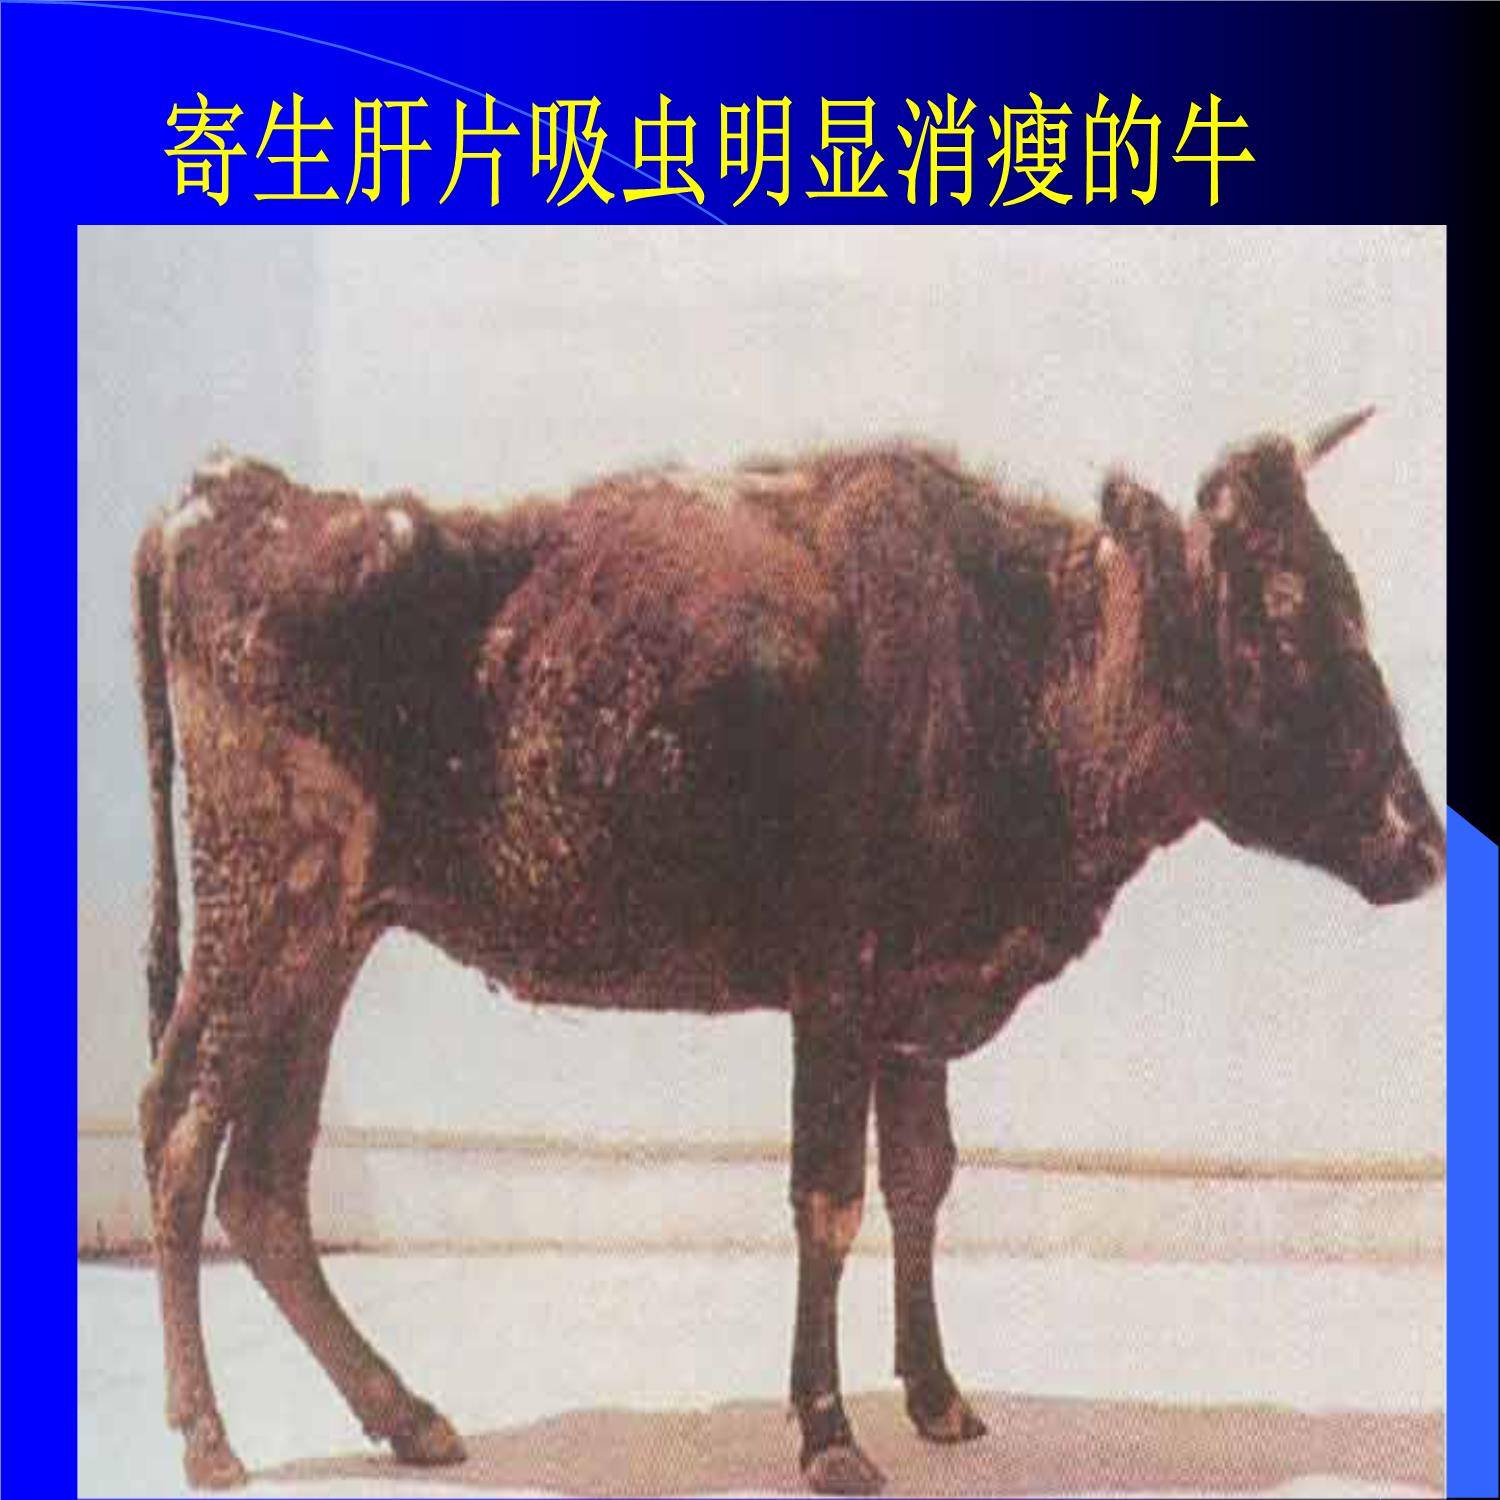 牛肝片吸虫是牛羊的寄生虫病之一,发病初期患牛的主要症状是食欲减退